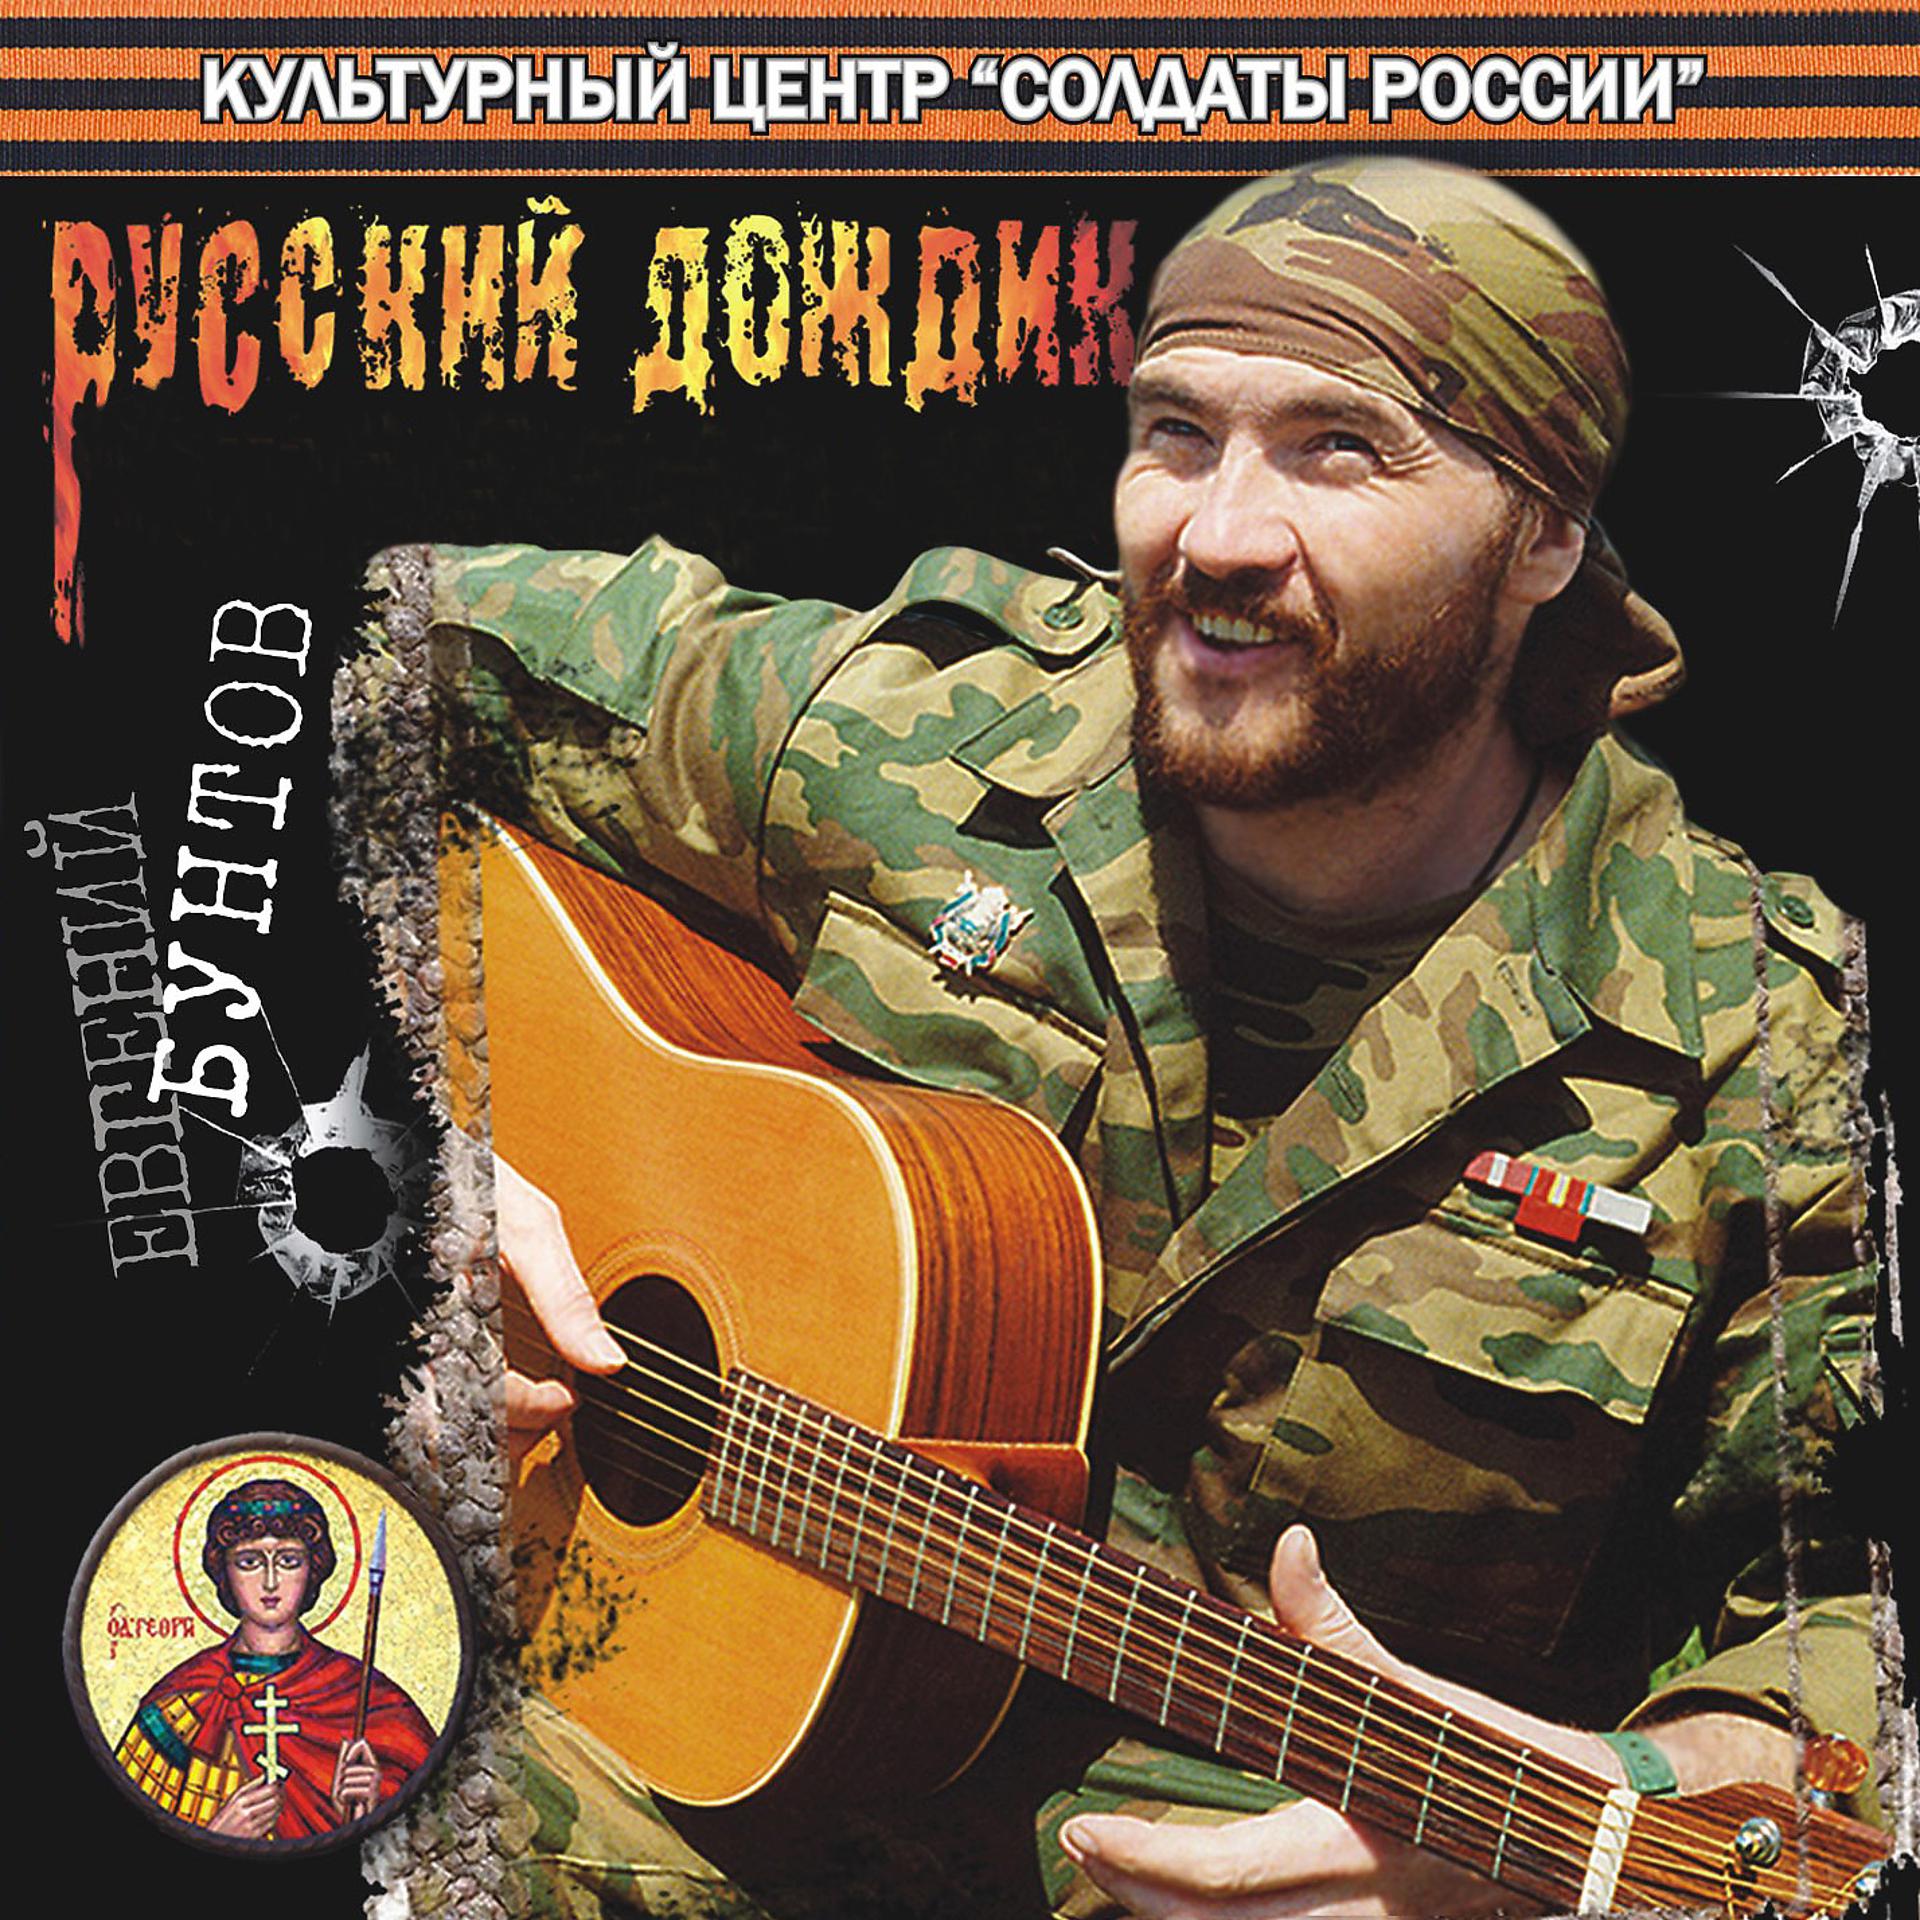 Армейские песни про чечню под гитару слушать. Певцы про Чечню военные. Песни про чеченскую войну. Певцы на войне. Военный исполнитель.